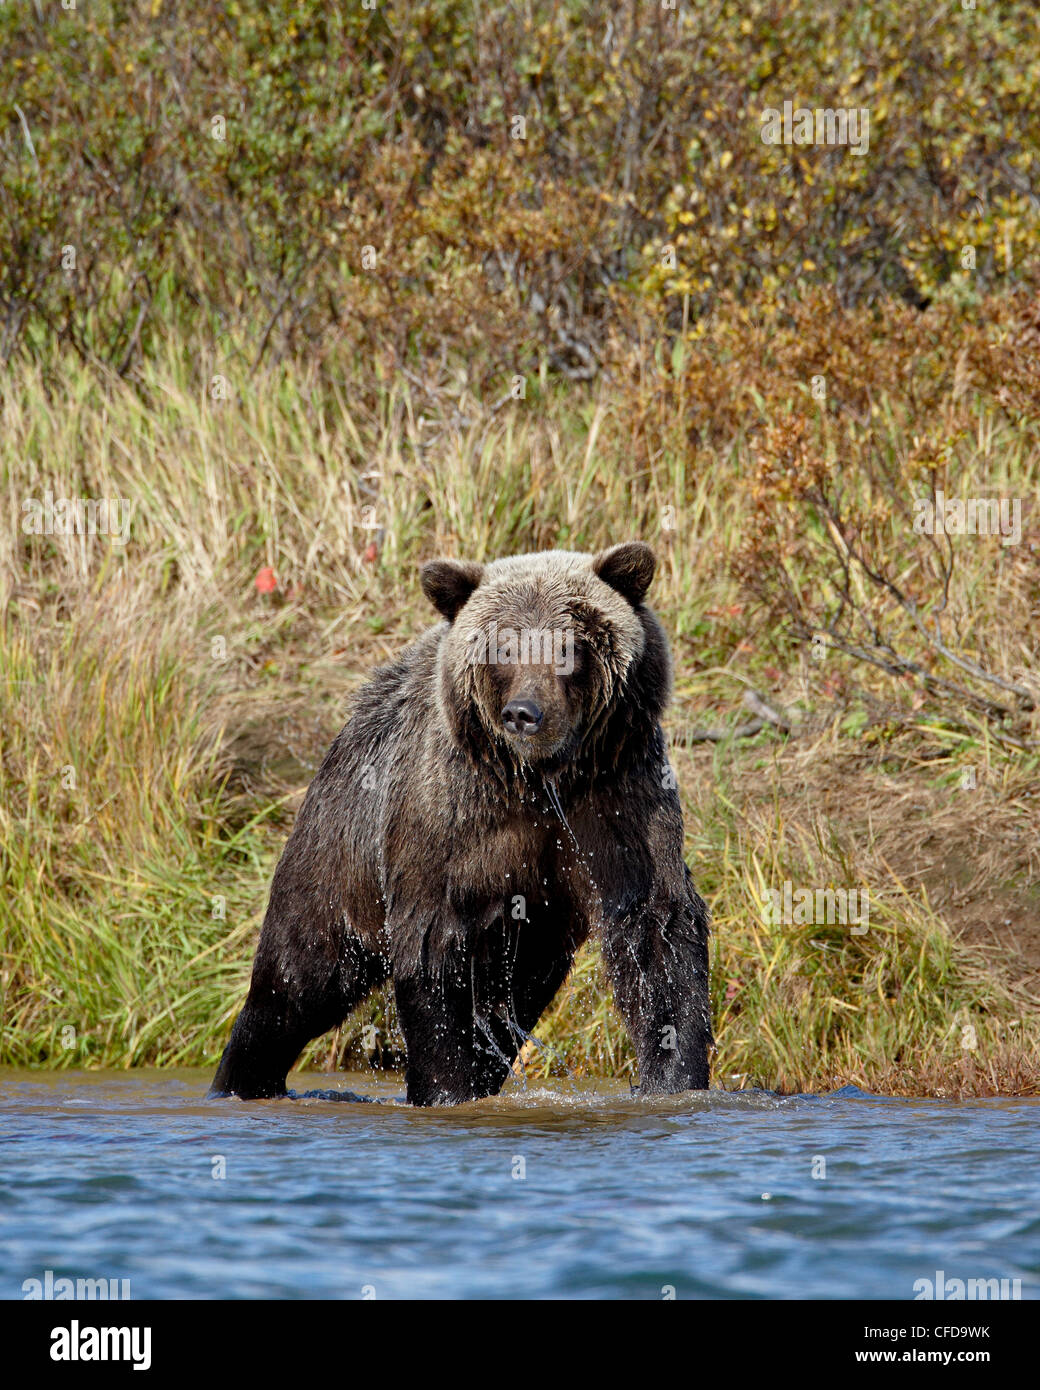 Grizzly bear (Ursus arctos horribilis) (Coastal brown bear) fishing, Katmai National Park and Preserve, Alaska, USA Stock Photo